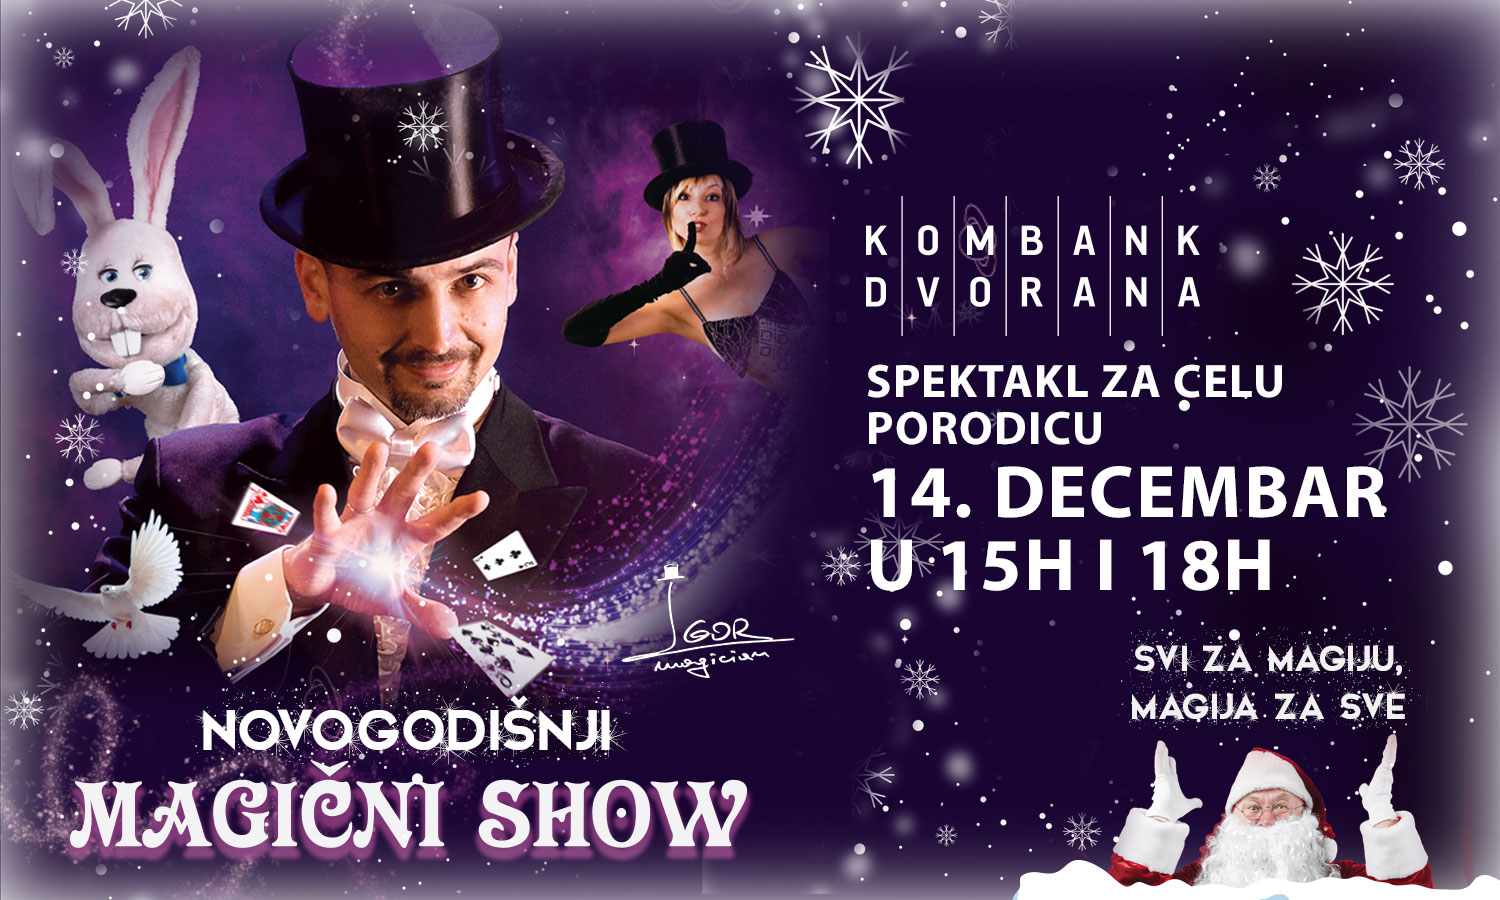 Novogodinji magini show, foto: Promo